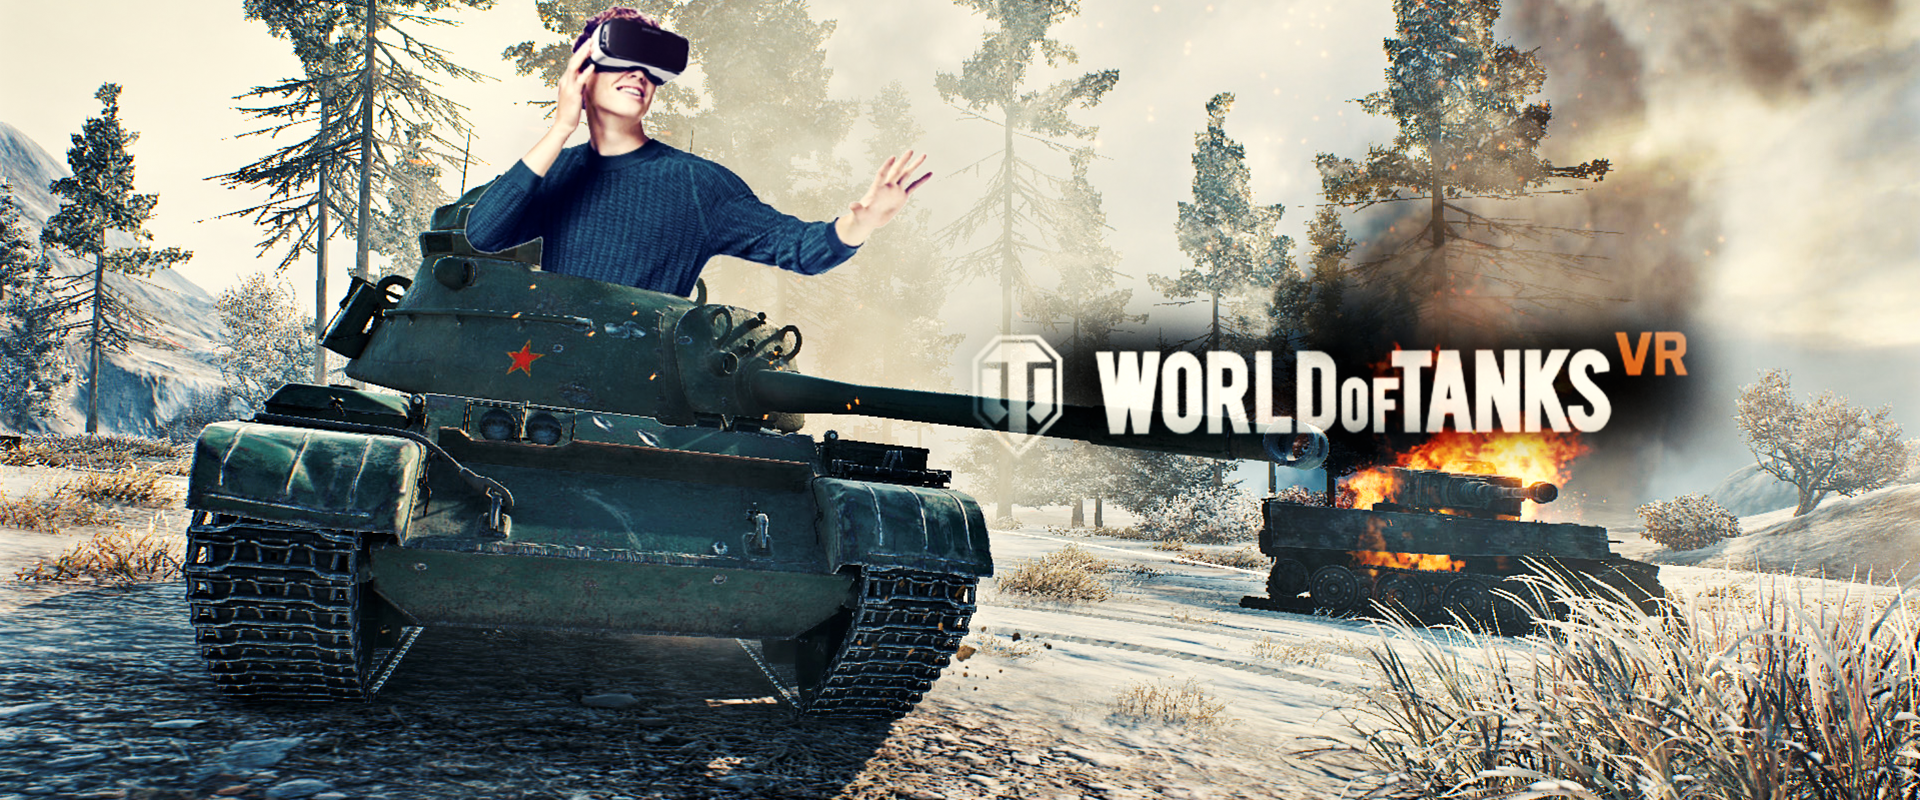 Készülőben a World of Tanks VR!